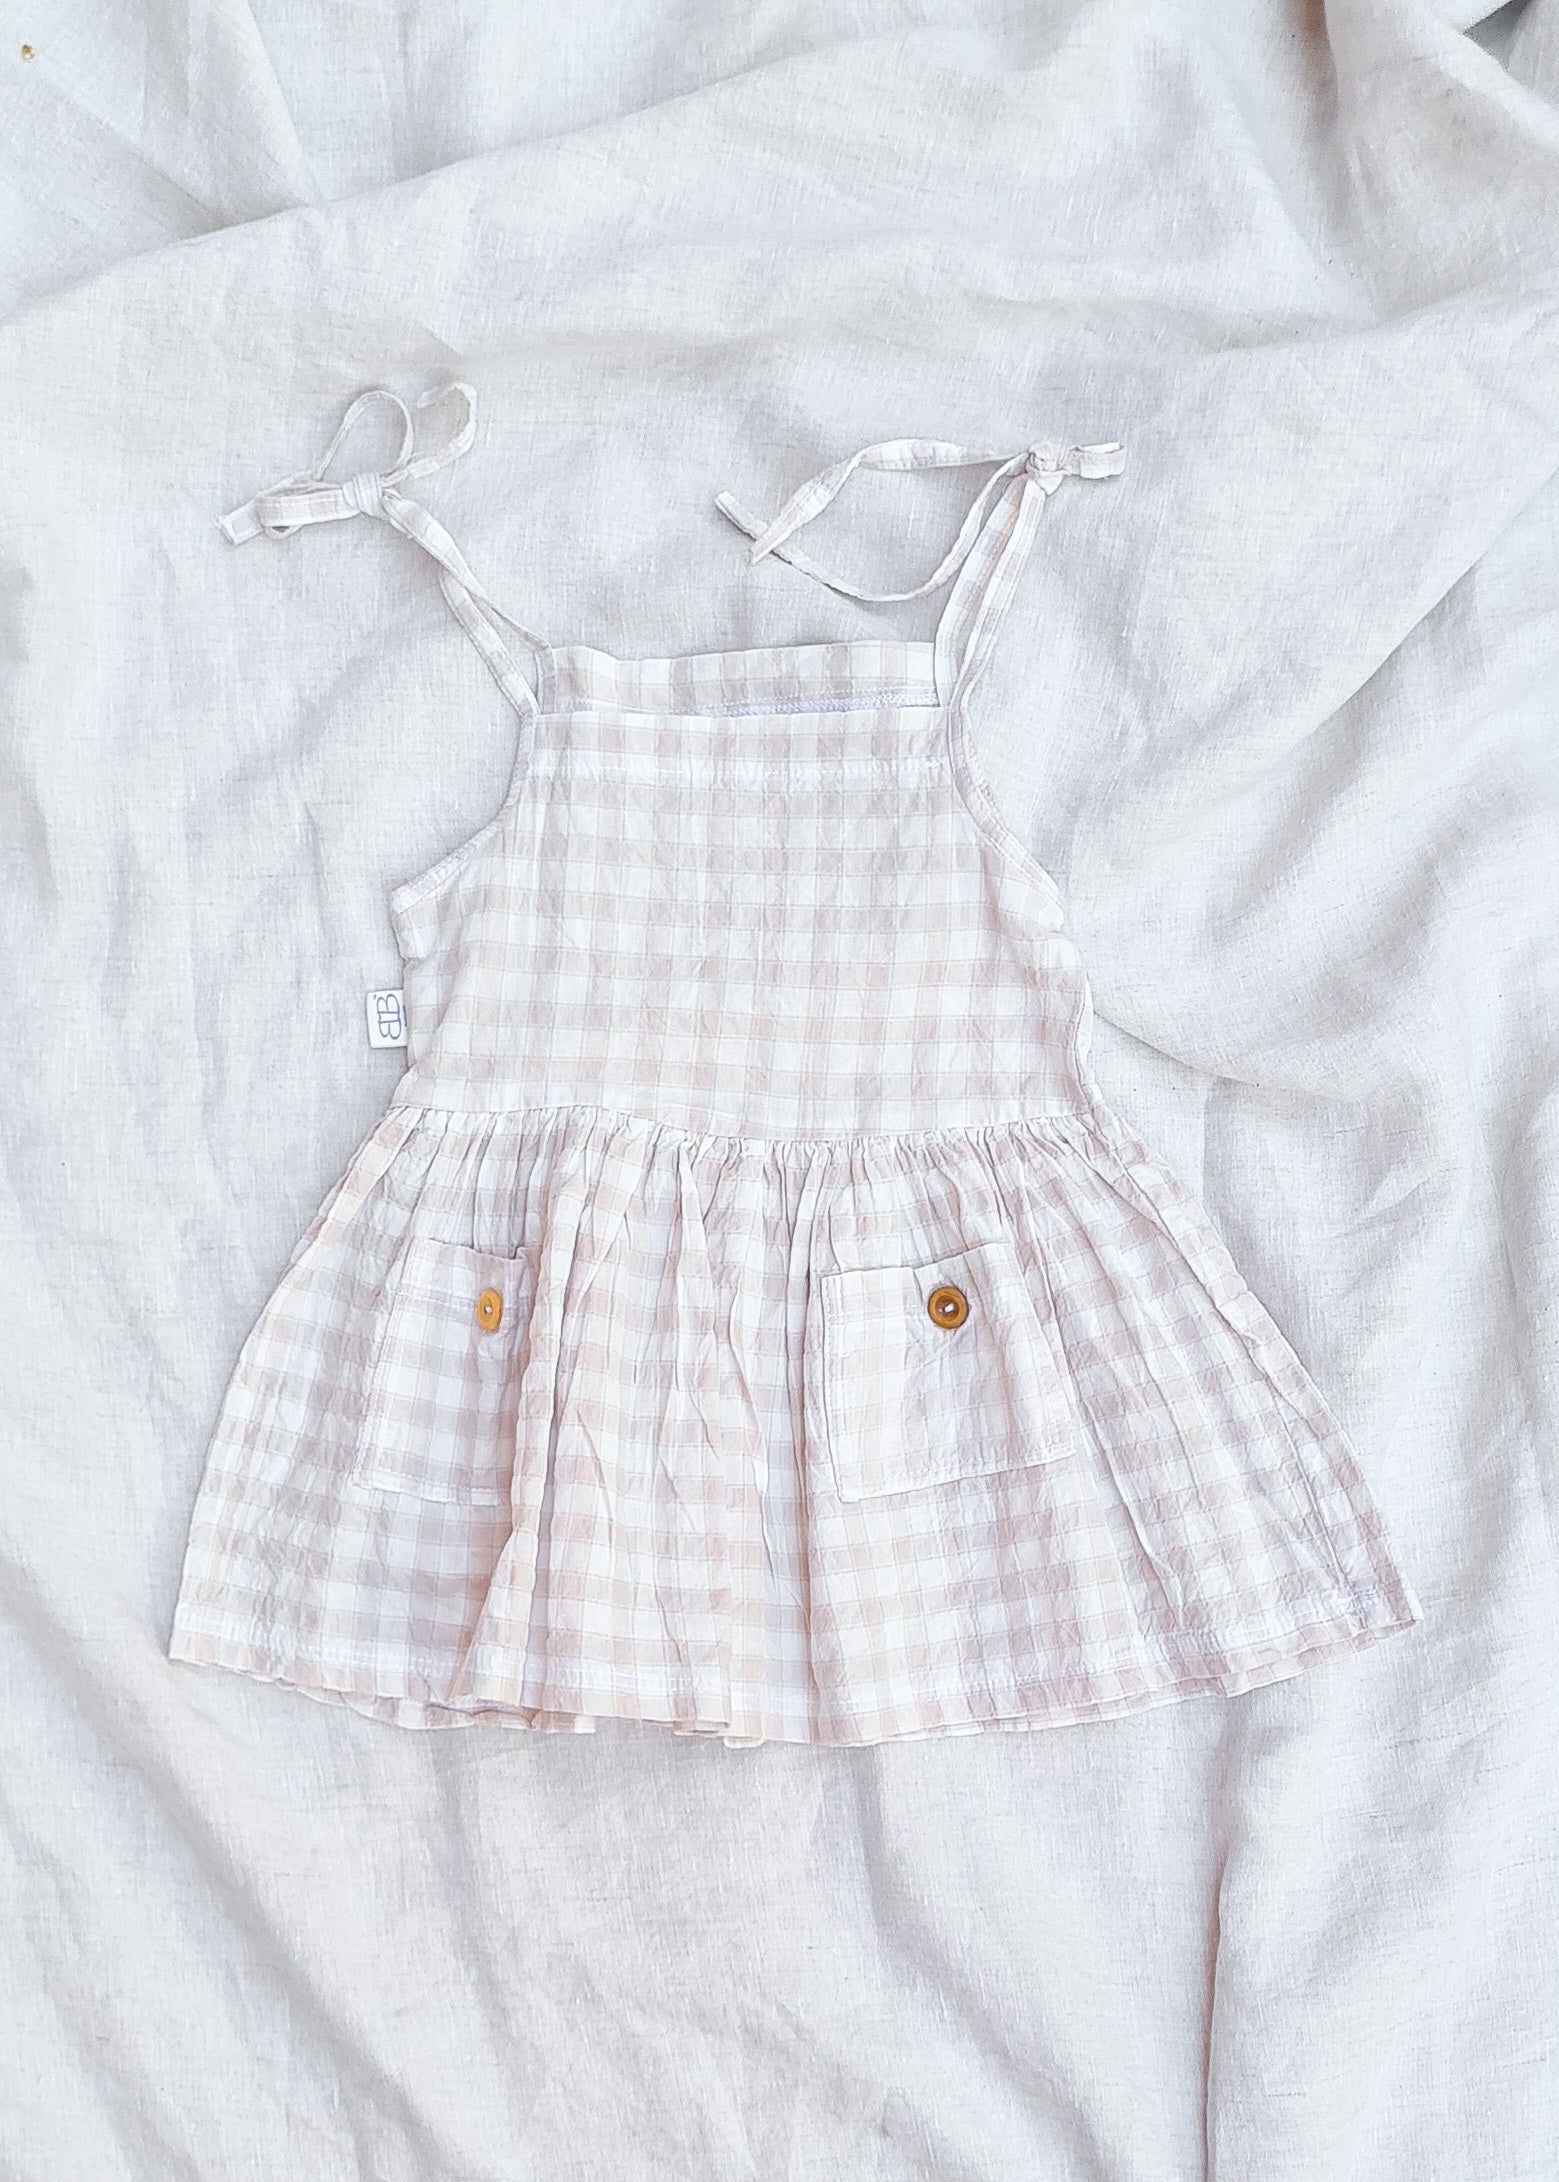 Beige linen dress baby toddler girl